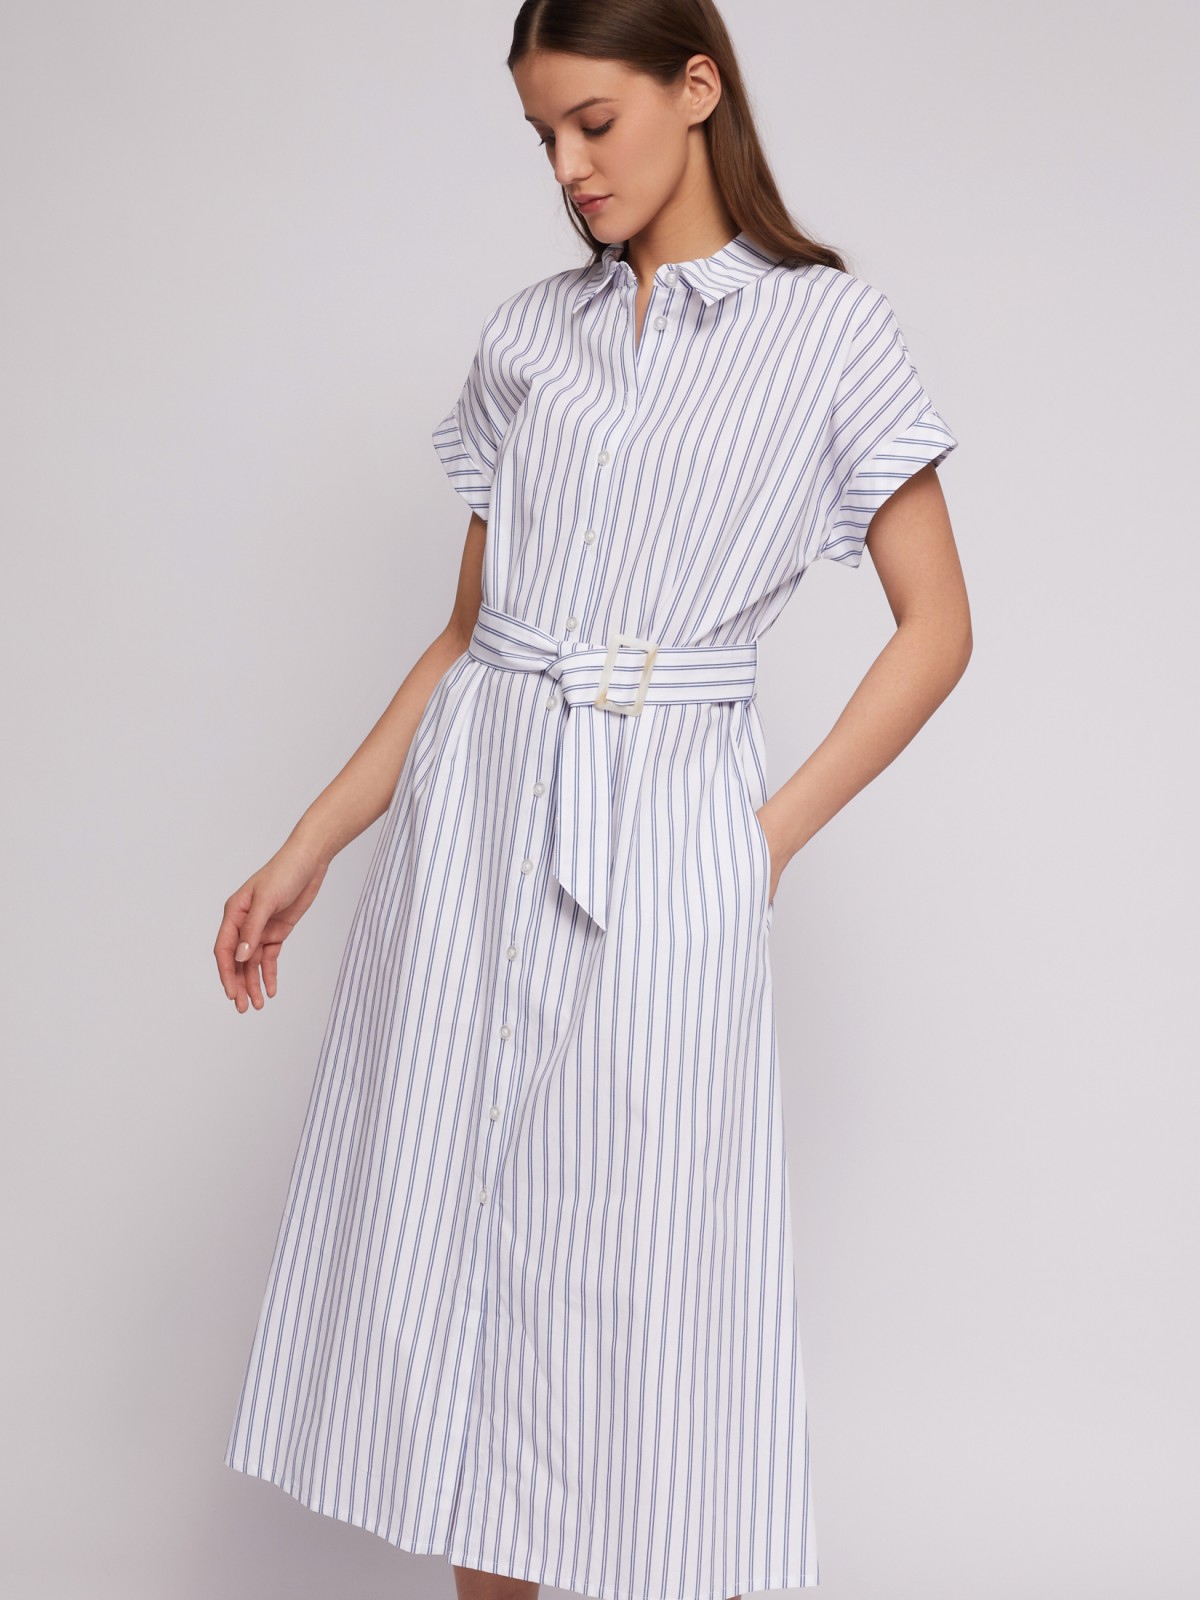 Платье-рубашка из хлопка с коротким рукавом и узором в полоску zolla 024218262363, цвет белый, размер S